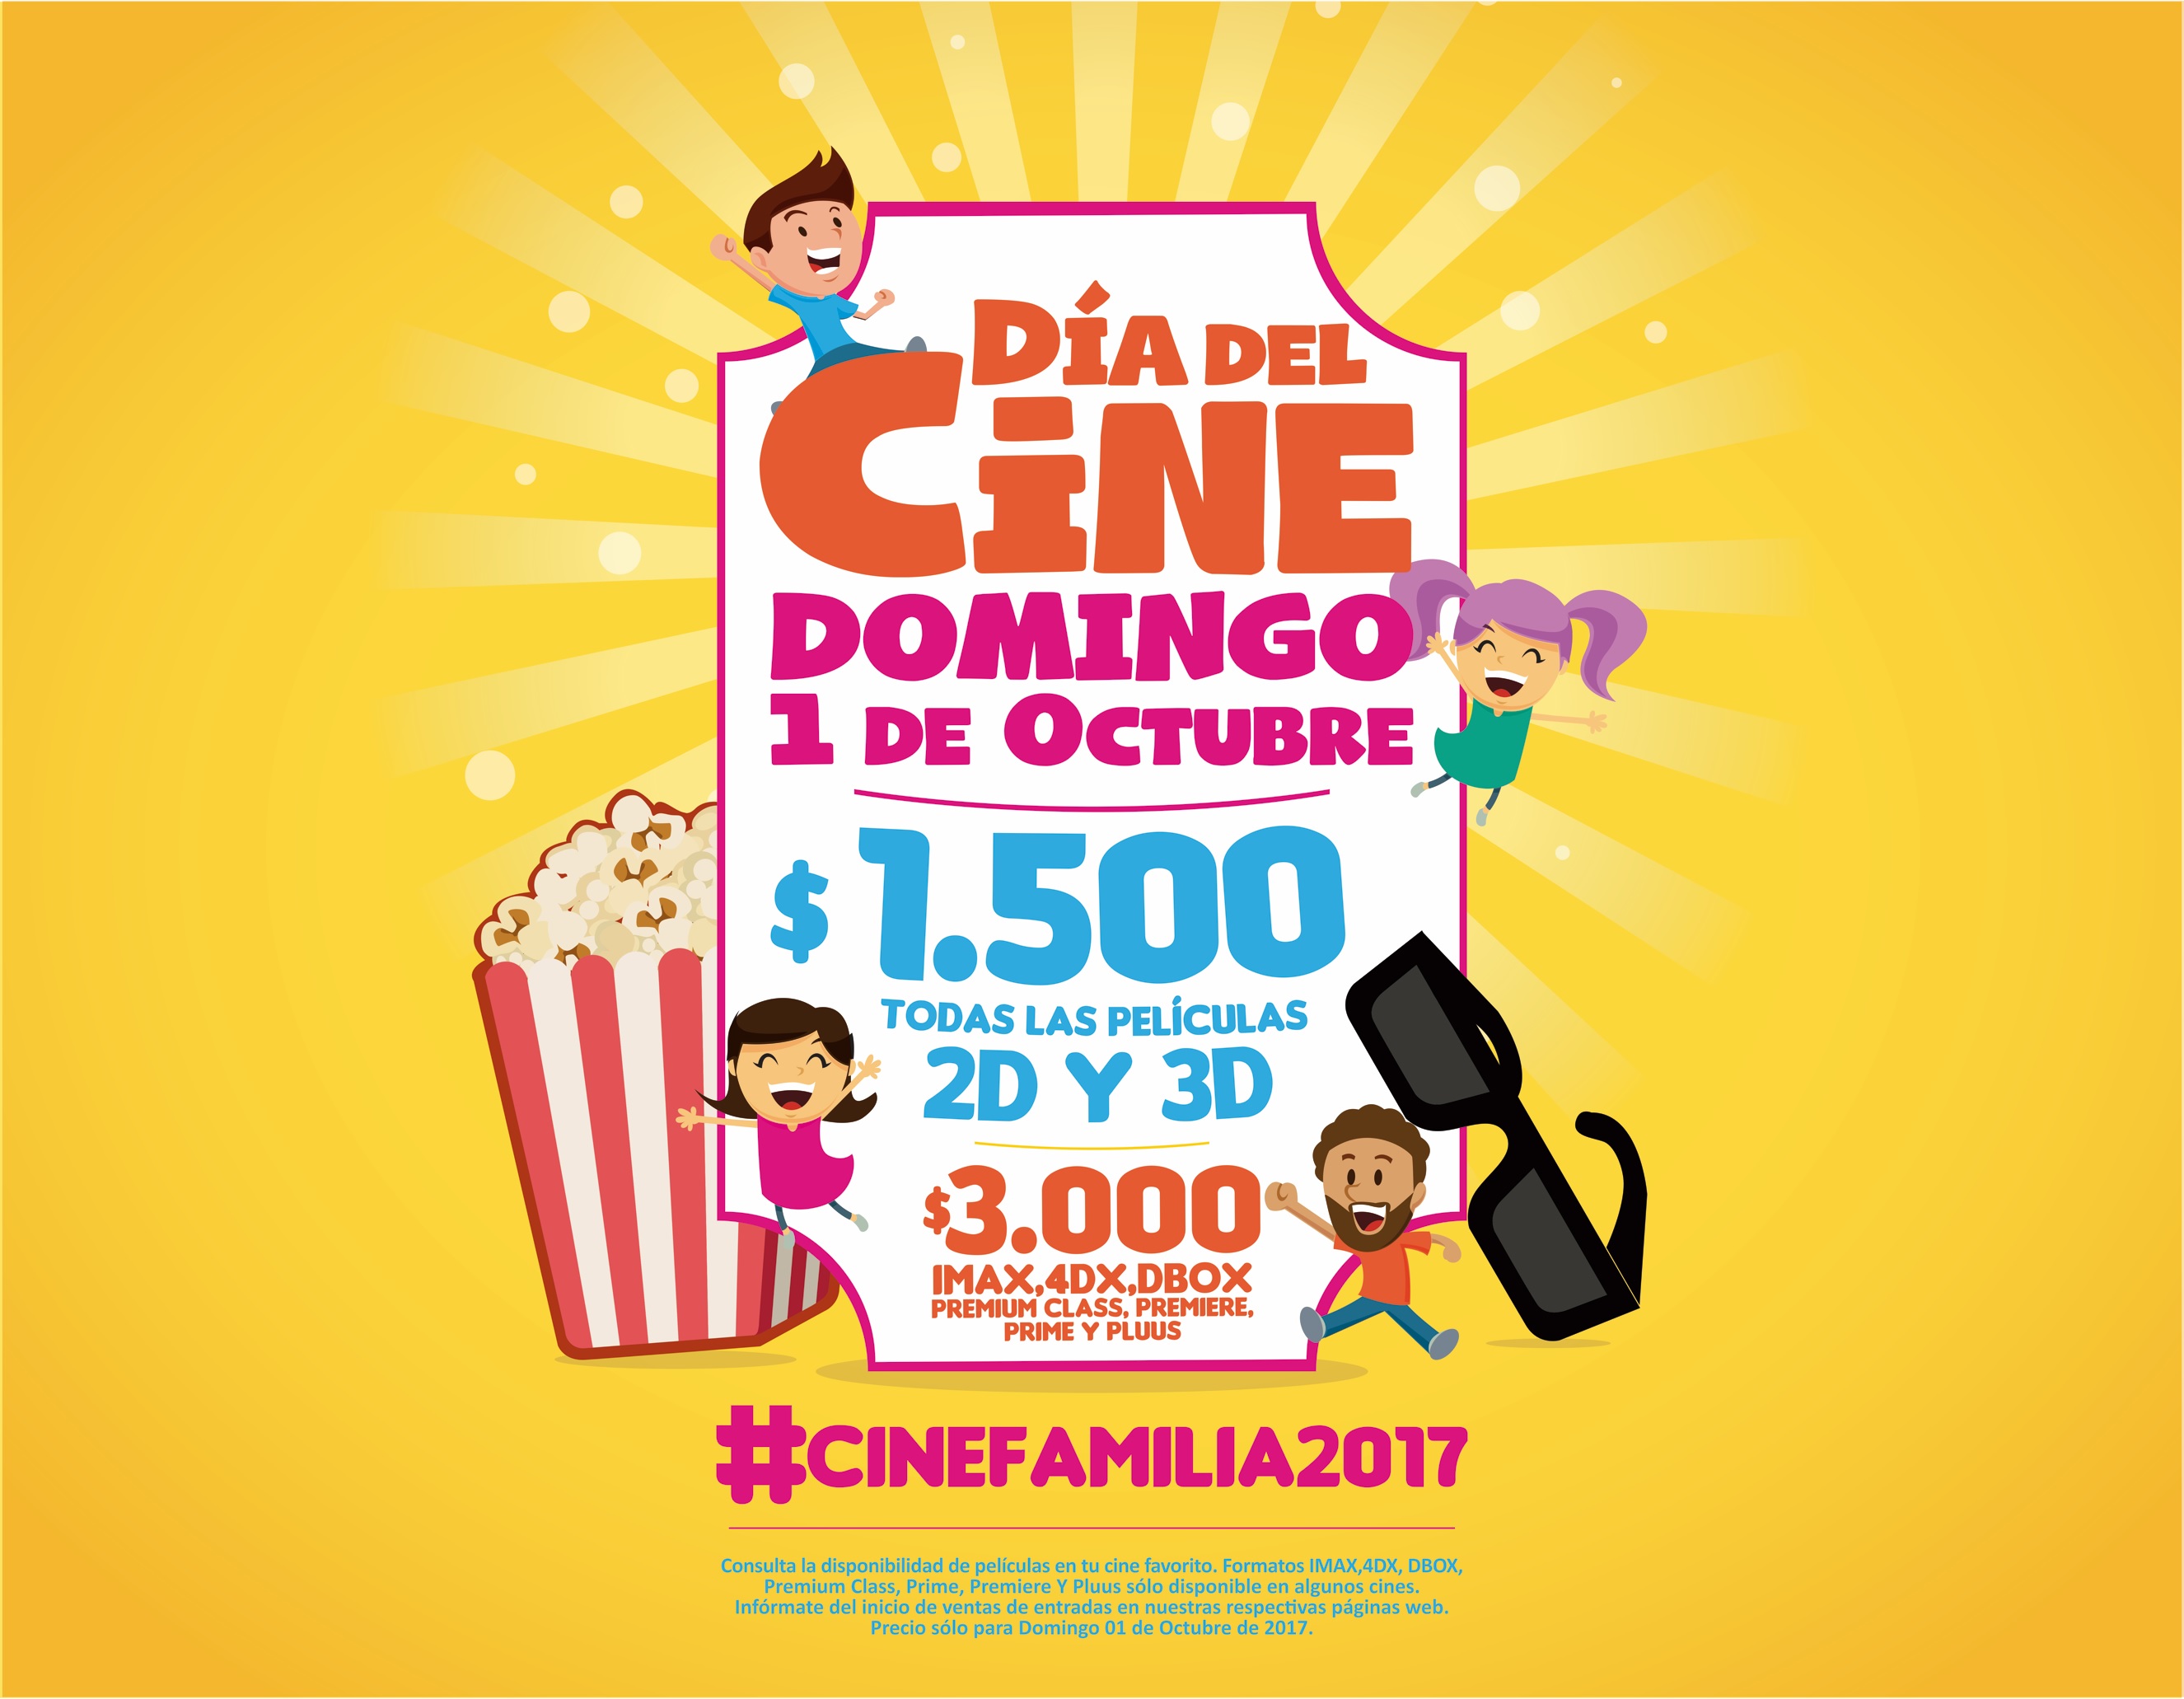 El domingo 1 de octubre se celebrará en todo Chile el Día del Cine con una amplia cartelera y entradas a solo $1500